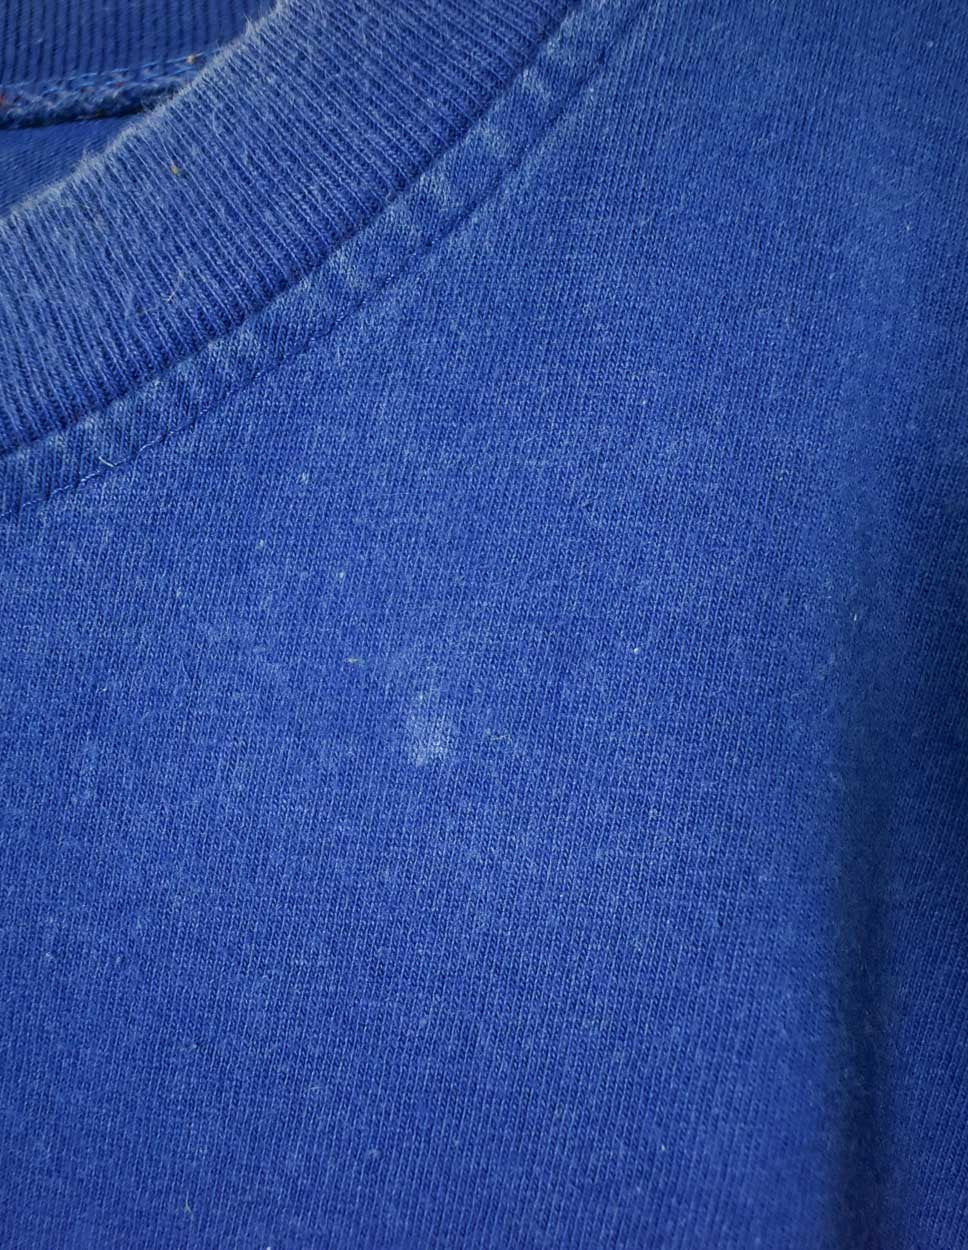 Blue Oakley T-Shirt - Small